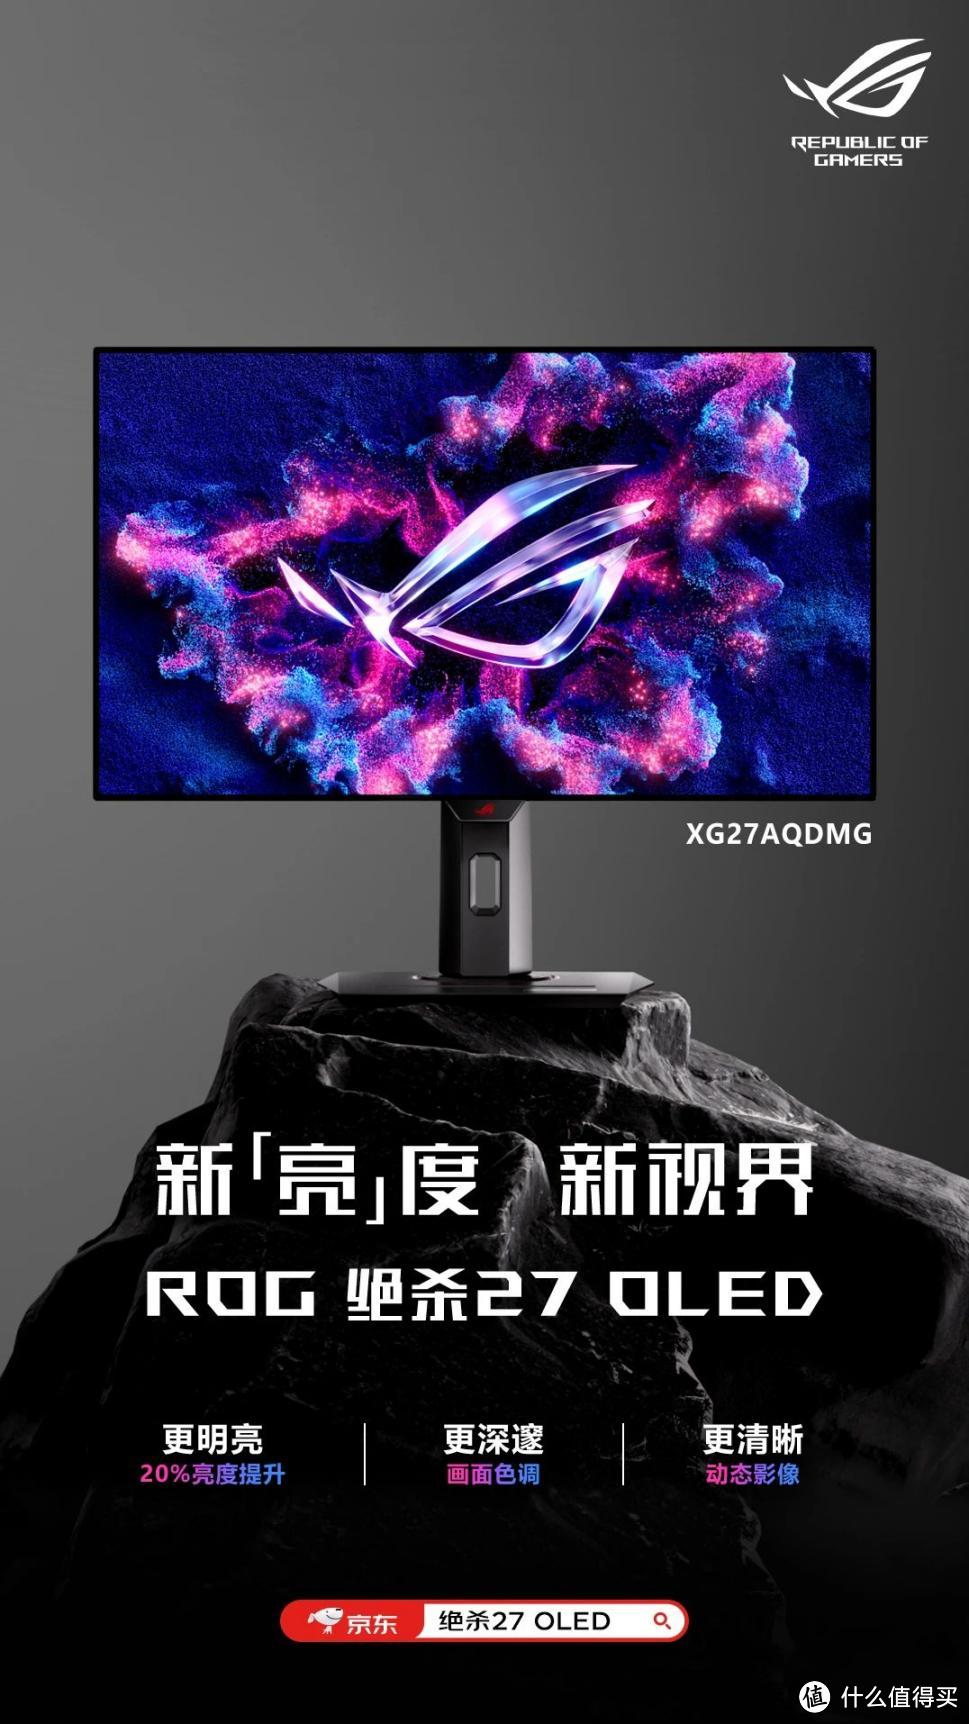 上新即大促！ROG绝杀27 OLED XG27AQDMG电竞显示器首发参加618！